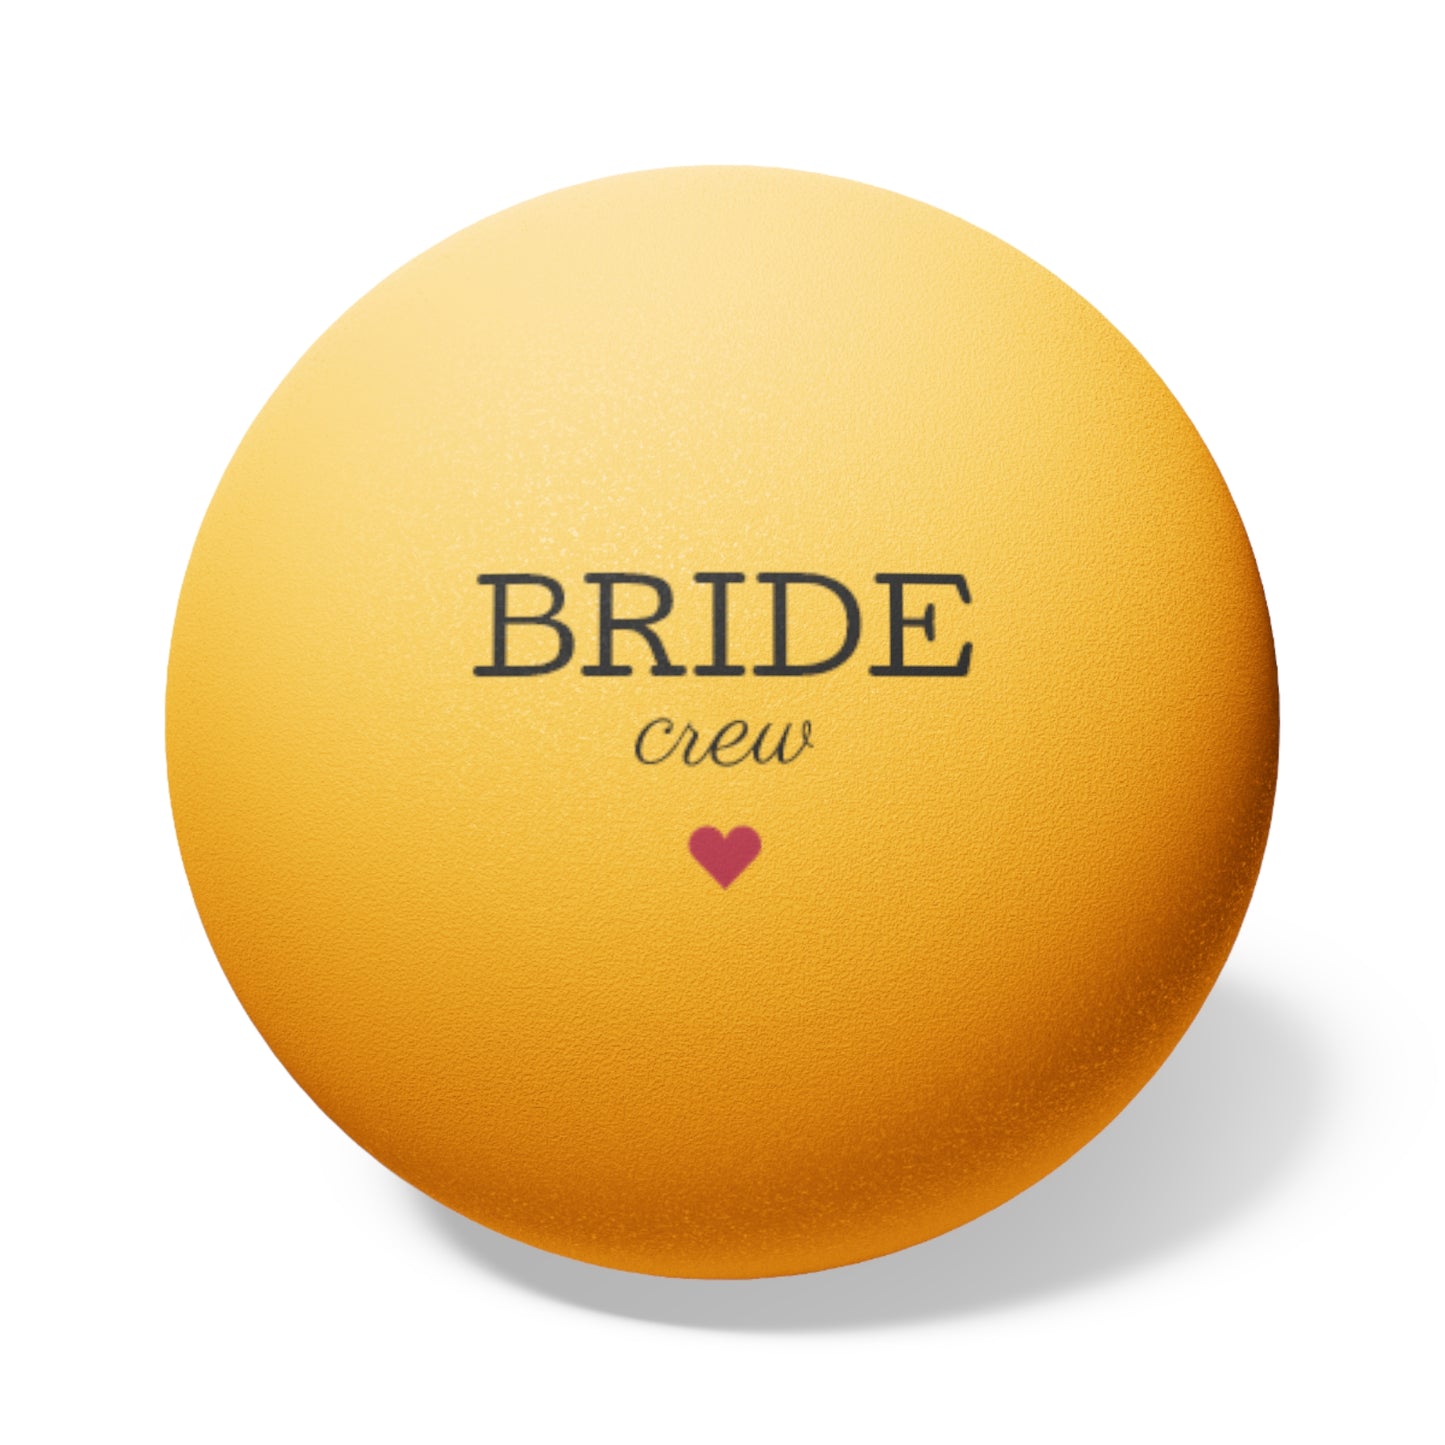 Bride Crew Ping Pong Balls, 6 pcs